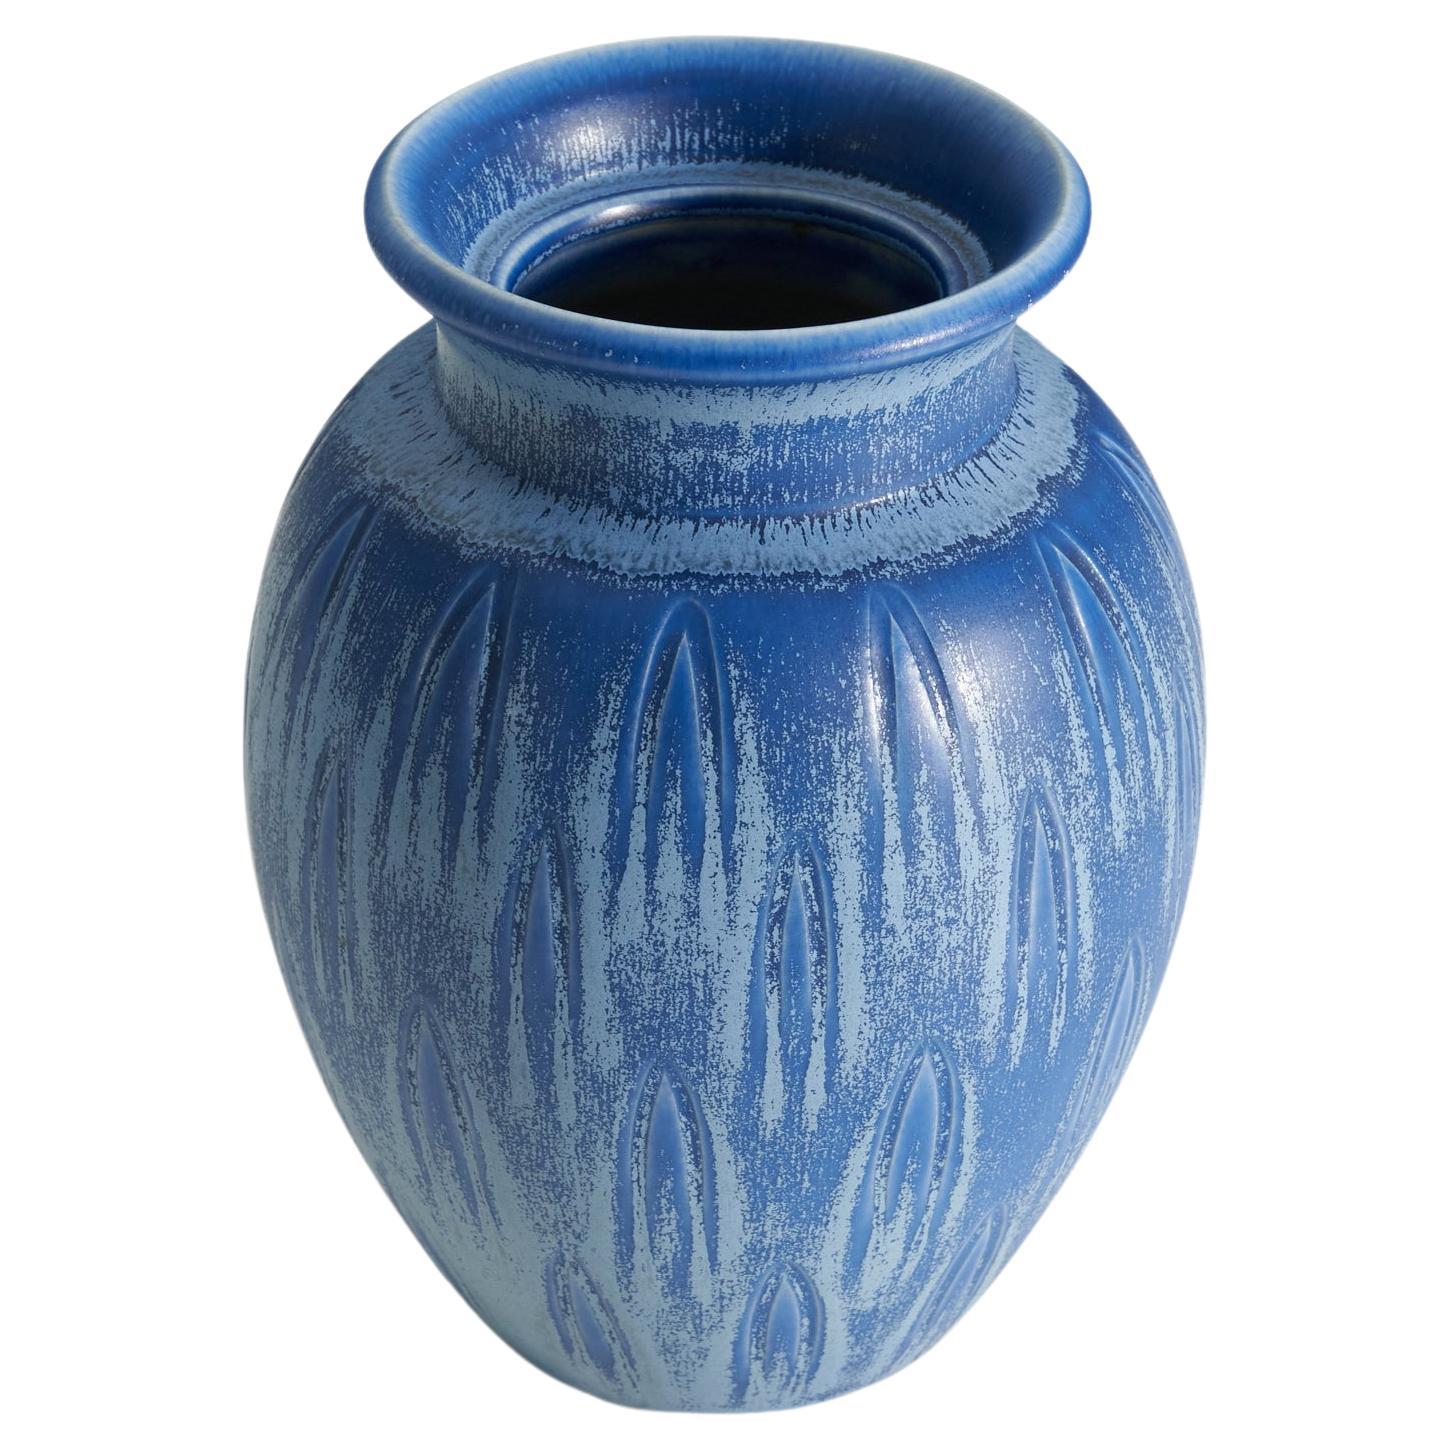 Eva Jancke Björk, Vase, Blue-Glazed Earthenware, for Bo Fajans, Sweden, 1940s